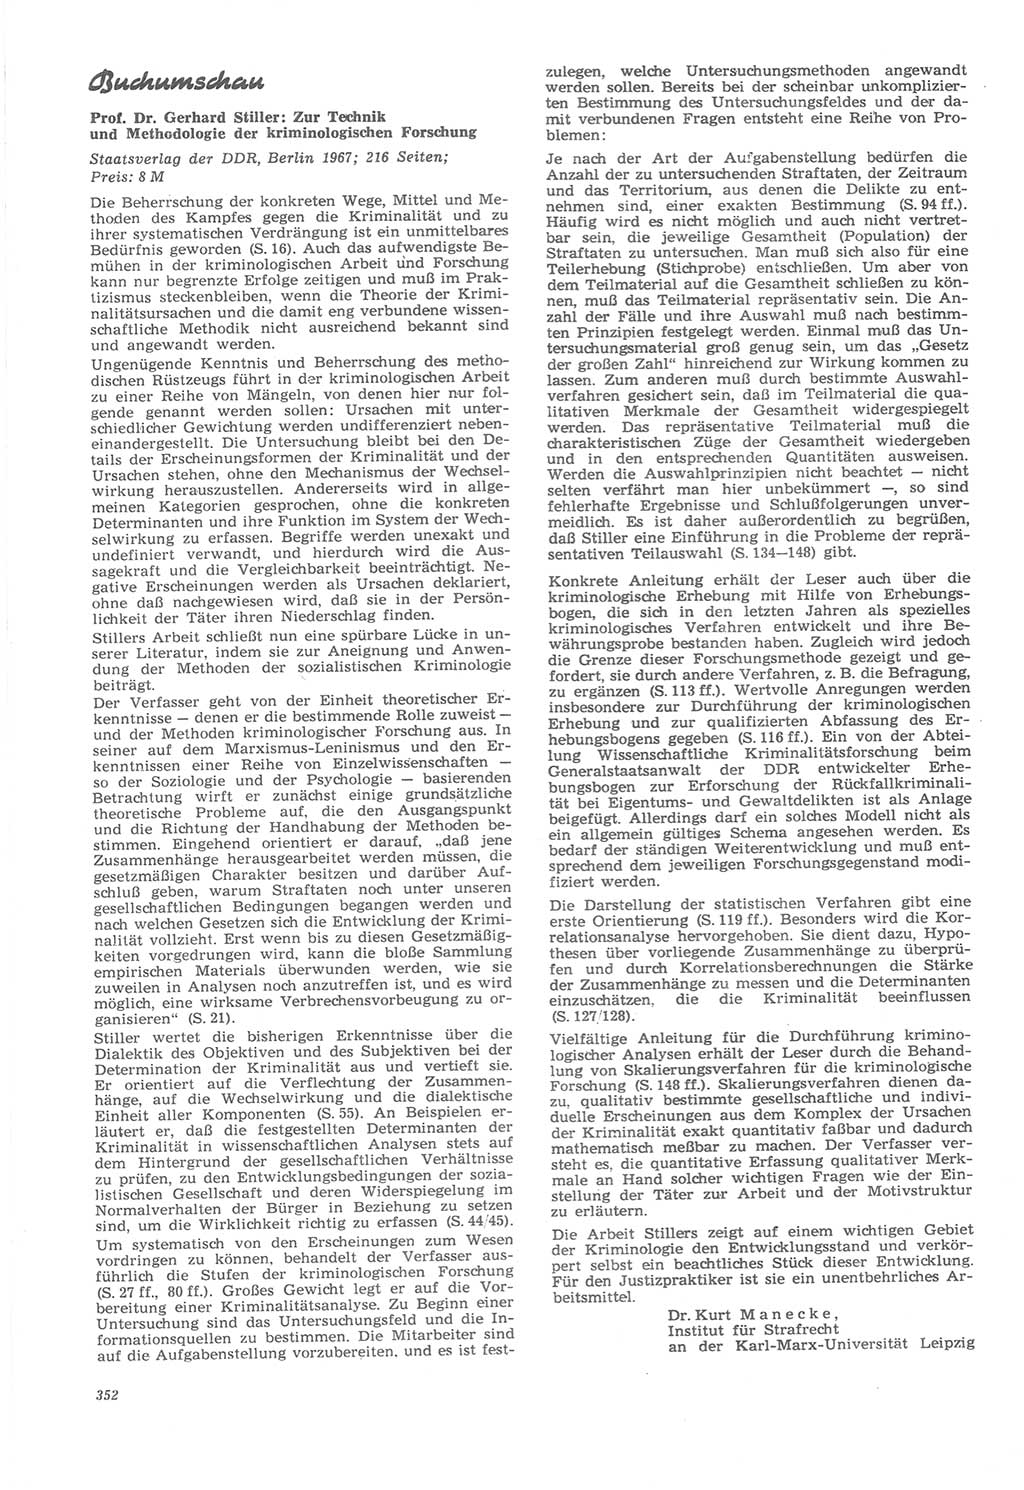 Neue Justiz (NJ), Zeitschrift für Recht und Rechtswissenschaft [Deutsche Demokratische Republik (DDR)], 22. Jahrgang 1968, Seite 352 (NJ DDR 1968, S. 352)